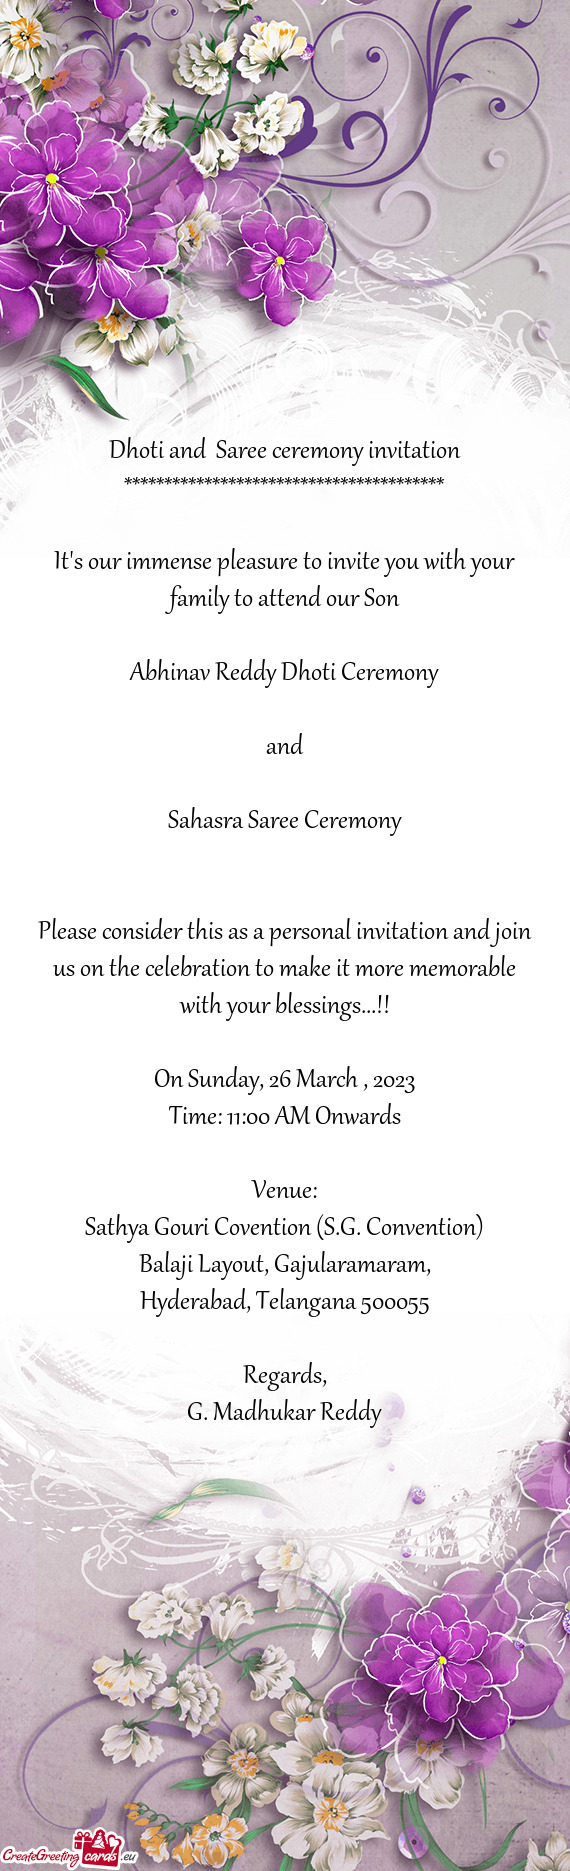 Abhinav Reddy Dhoti Ceremony